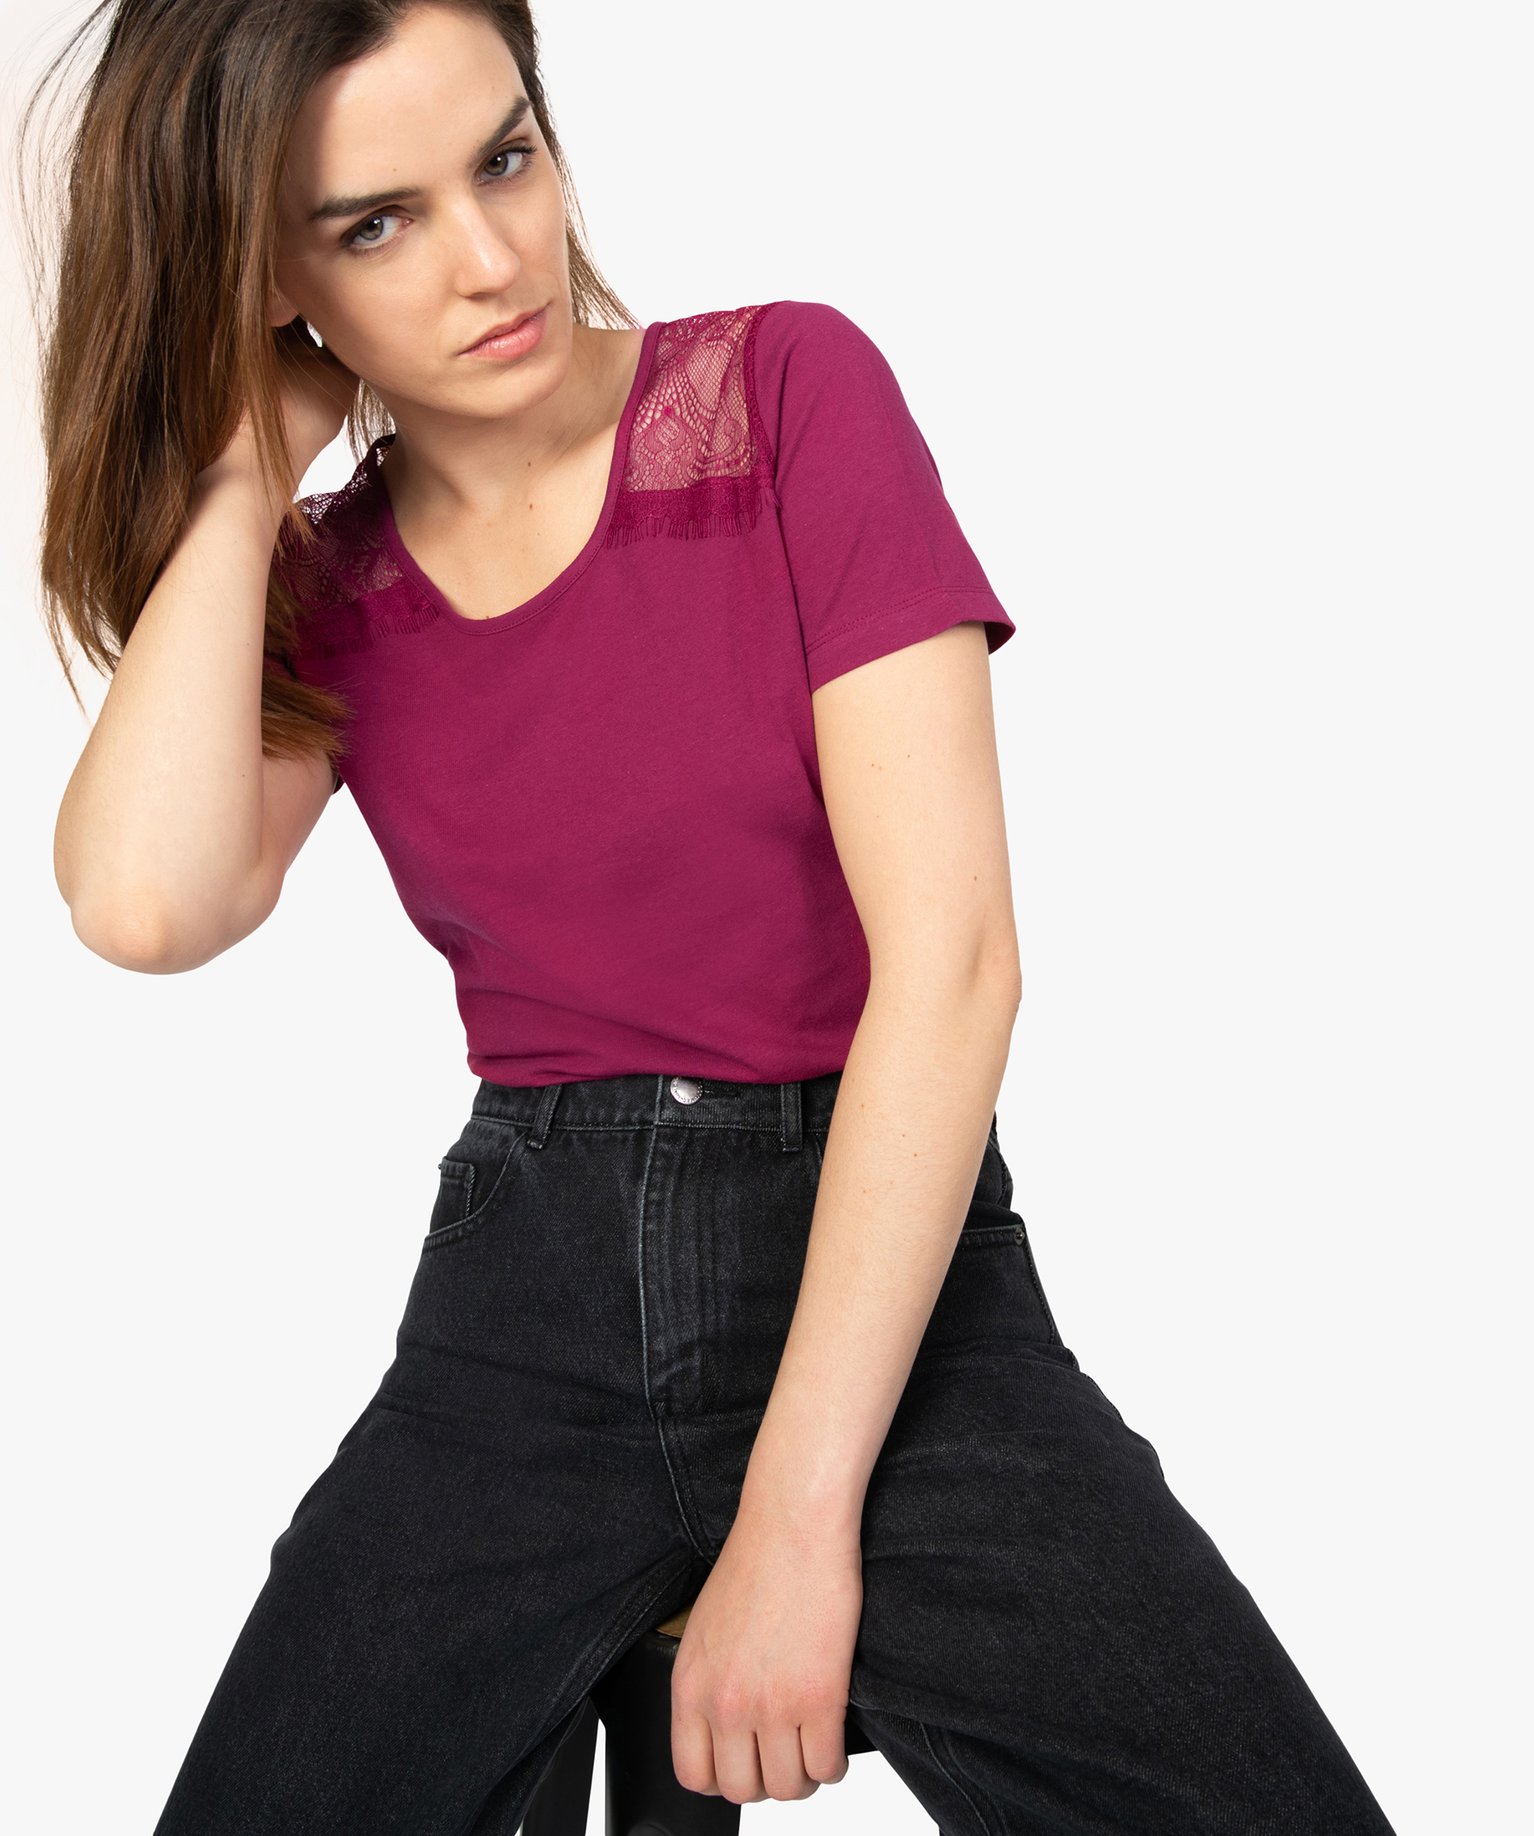 Tee-shirt femme grande taille avec dentelle sur les épaules Gemo Femme Vêtements Tops & T-shirts T-shirts Manches courtes 